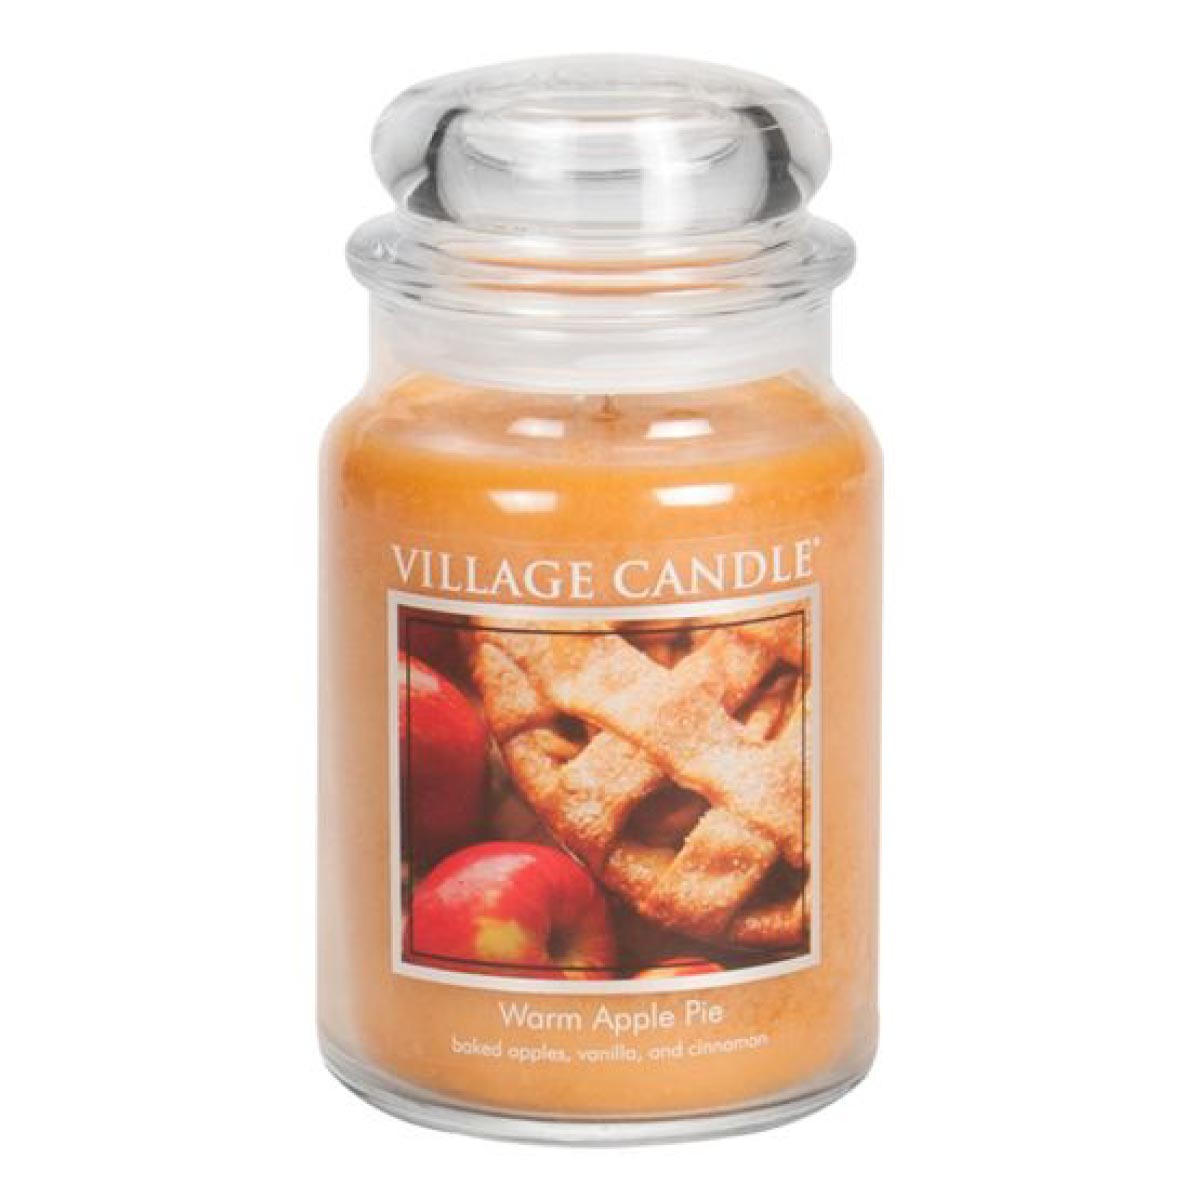 Warm Apple Pie - Duftkerze im Glas 602g - Village Candle®